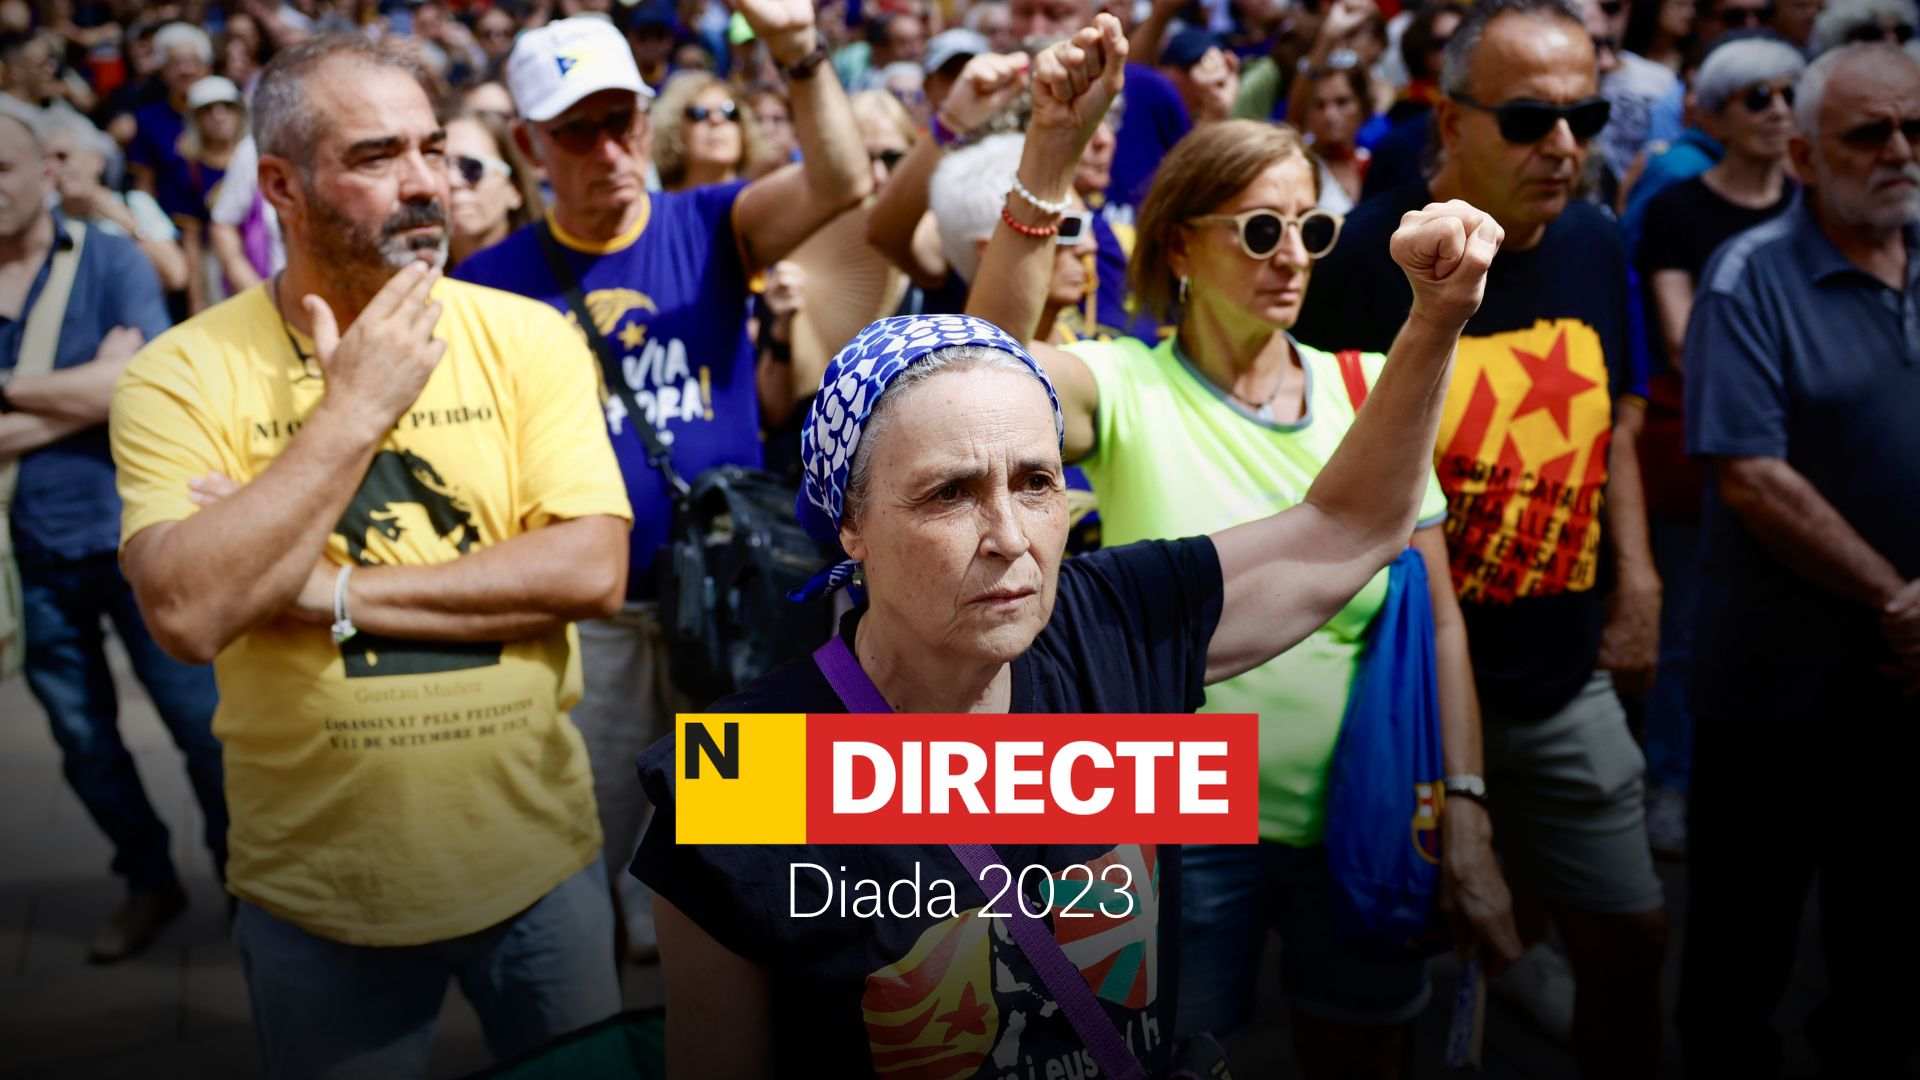 Diada de Catalunya 2023, DIRECTE | Última hora de la manifestació de l'11 de setembre